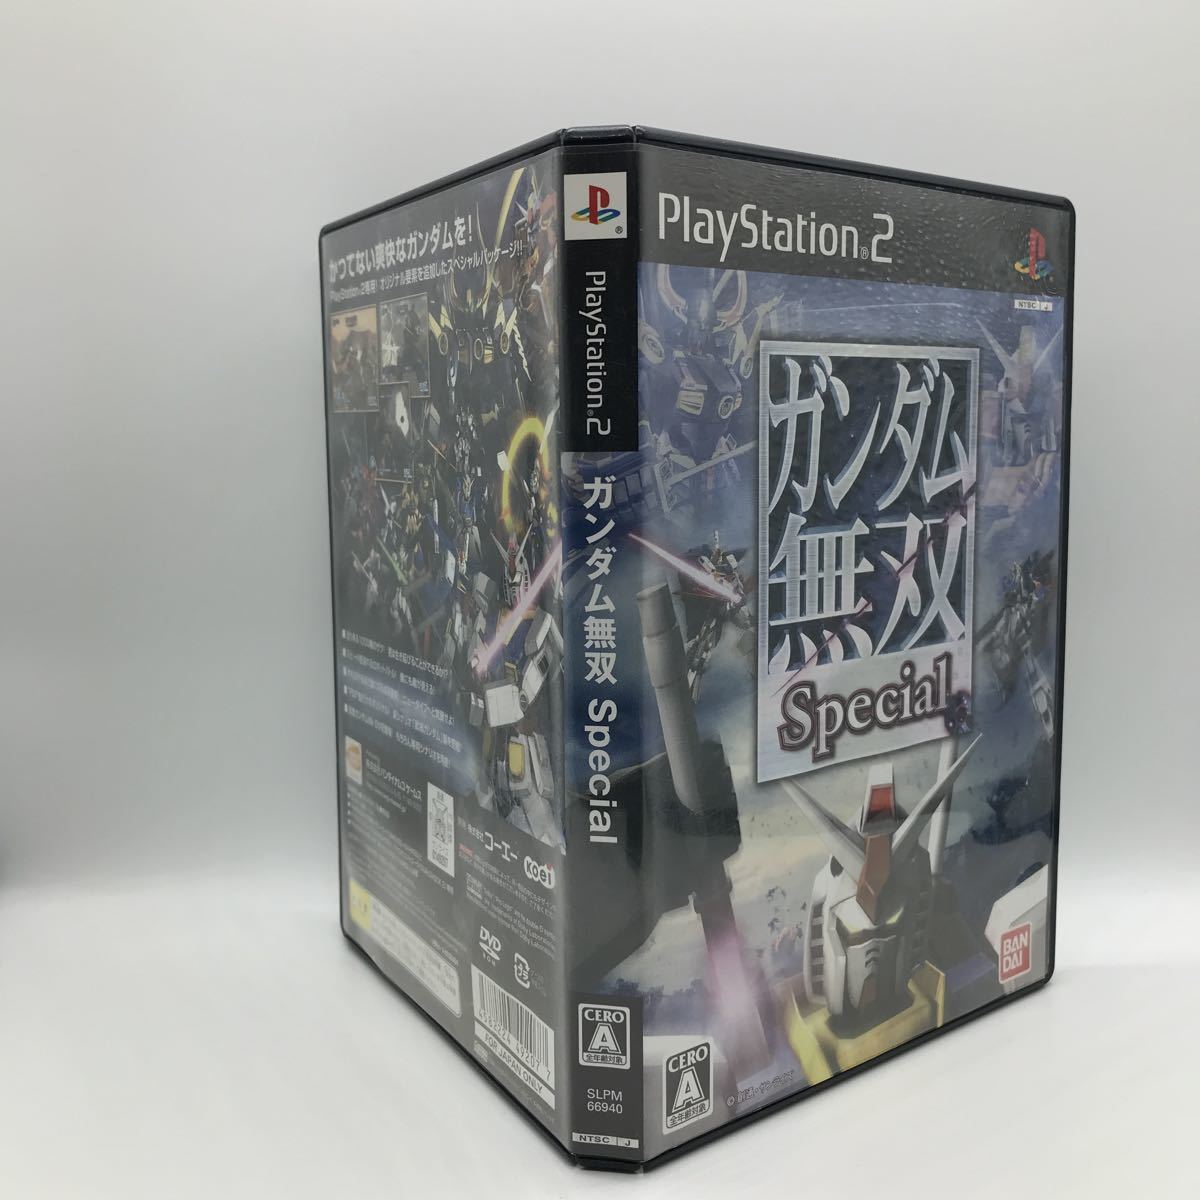 ガンダム無双 Special PS2 プレイステーション2